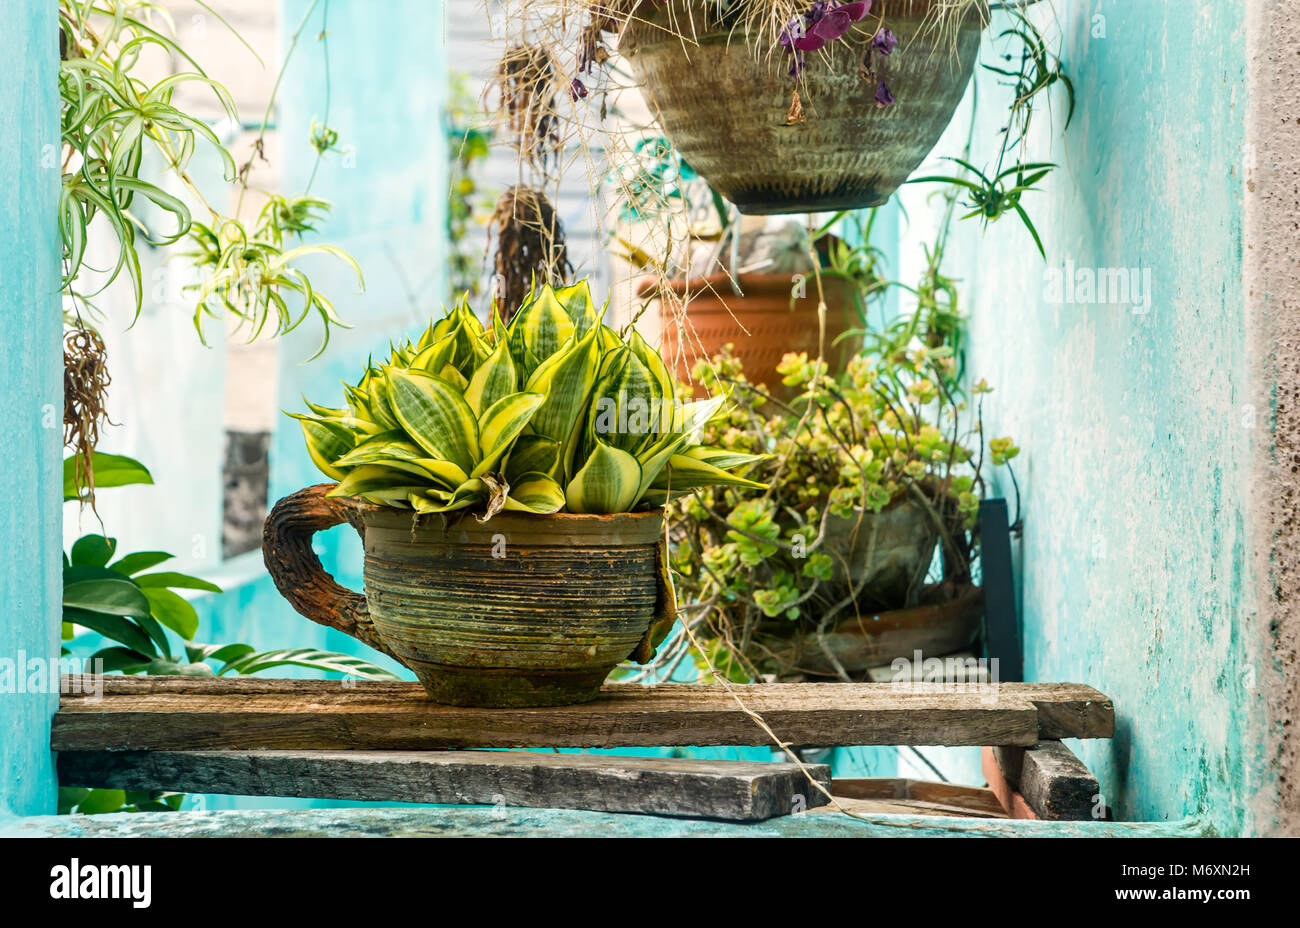 Tropische Pflanzen auf einer Veranda an einem Haus in Kuba Stockfotografie  - Alamy